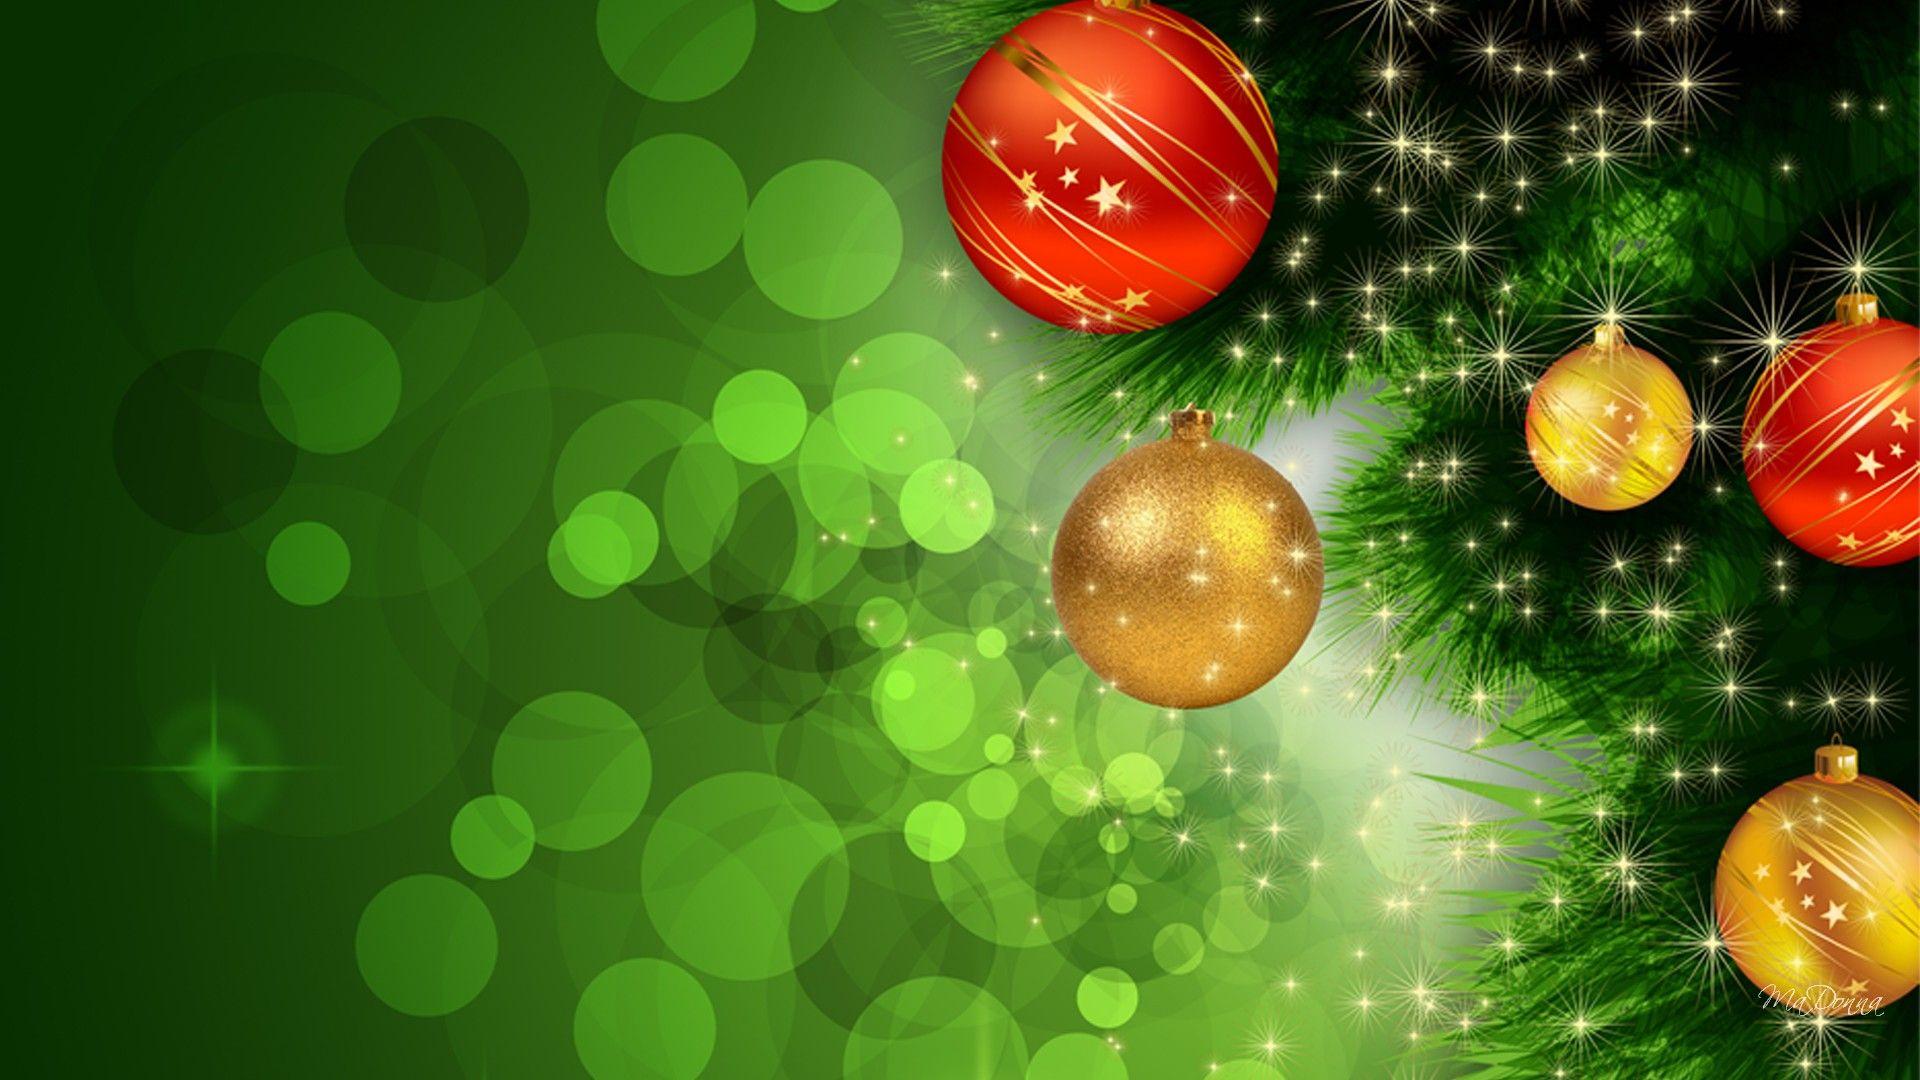 Hình nền Giáng sinh màu xanh lá cây: Hãy tận hưởng mùa lễ hội cùng với những hình nền Giáng sinh màu xanh lá cây tuyệt đẹp! Sự thật là màu xanh lá cây là màu sắc kinh điển của Giáng sinh và các hình ảnh liên quan sẽ ôm trọn nét đẹp và truyền thống của mùa lễ hội này.